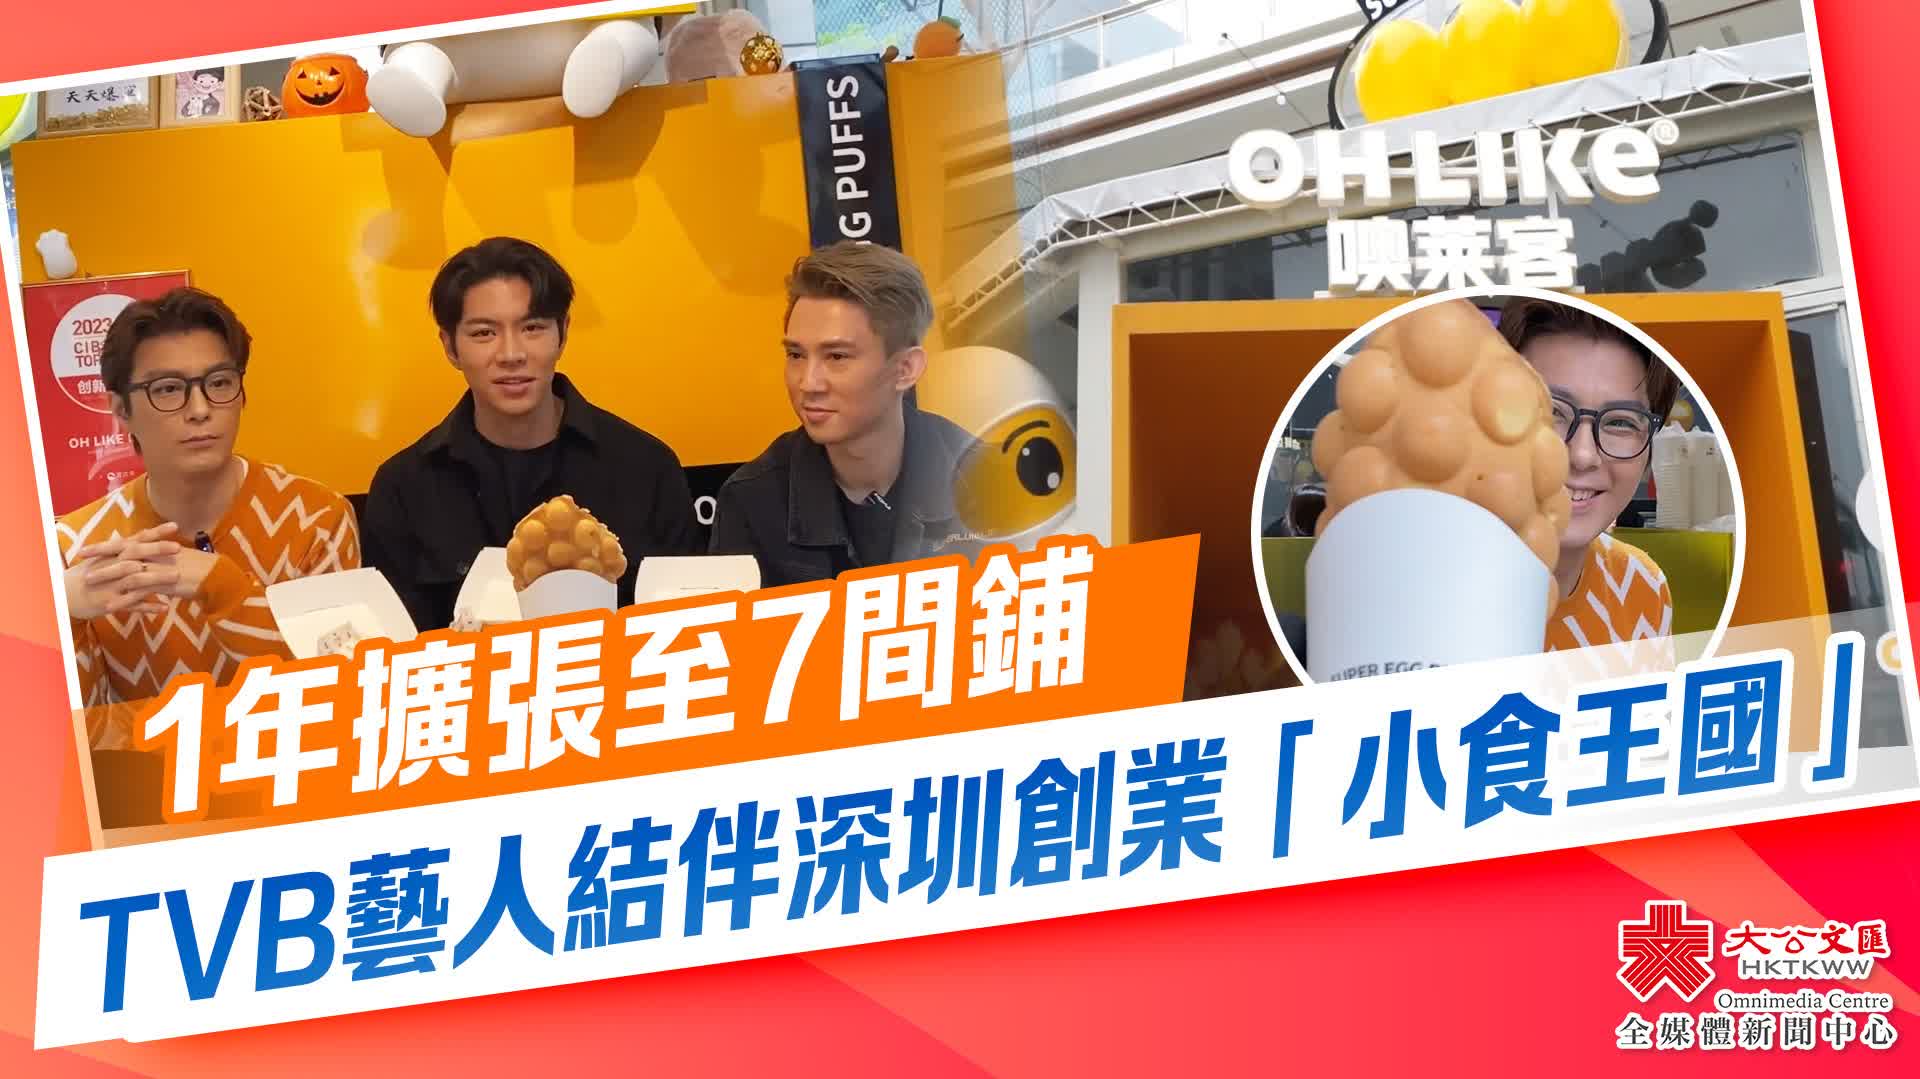 1年擴張至7間鋪　TVB藝人結伴深圳創業「小食王國」